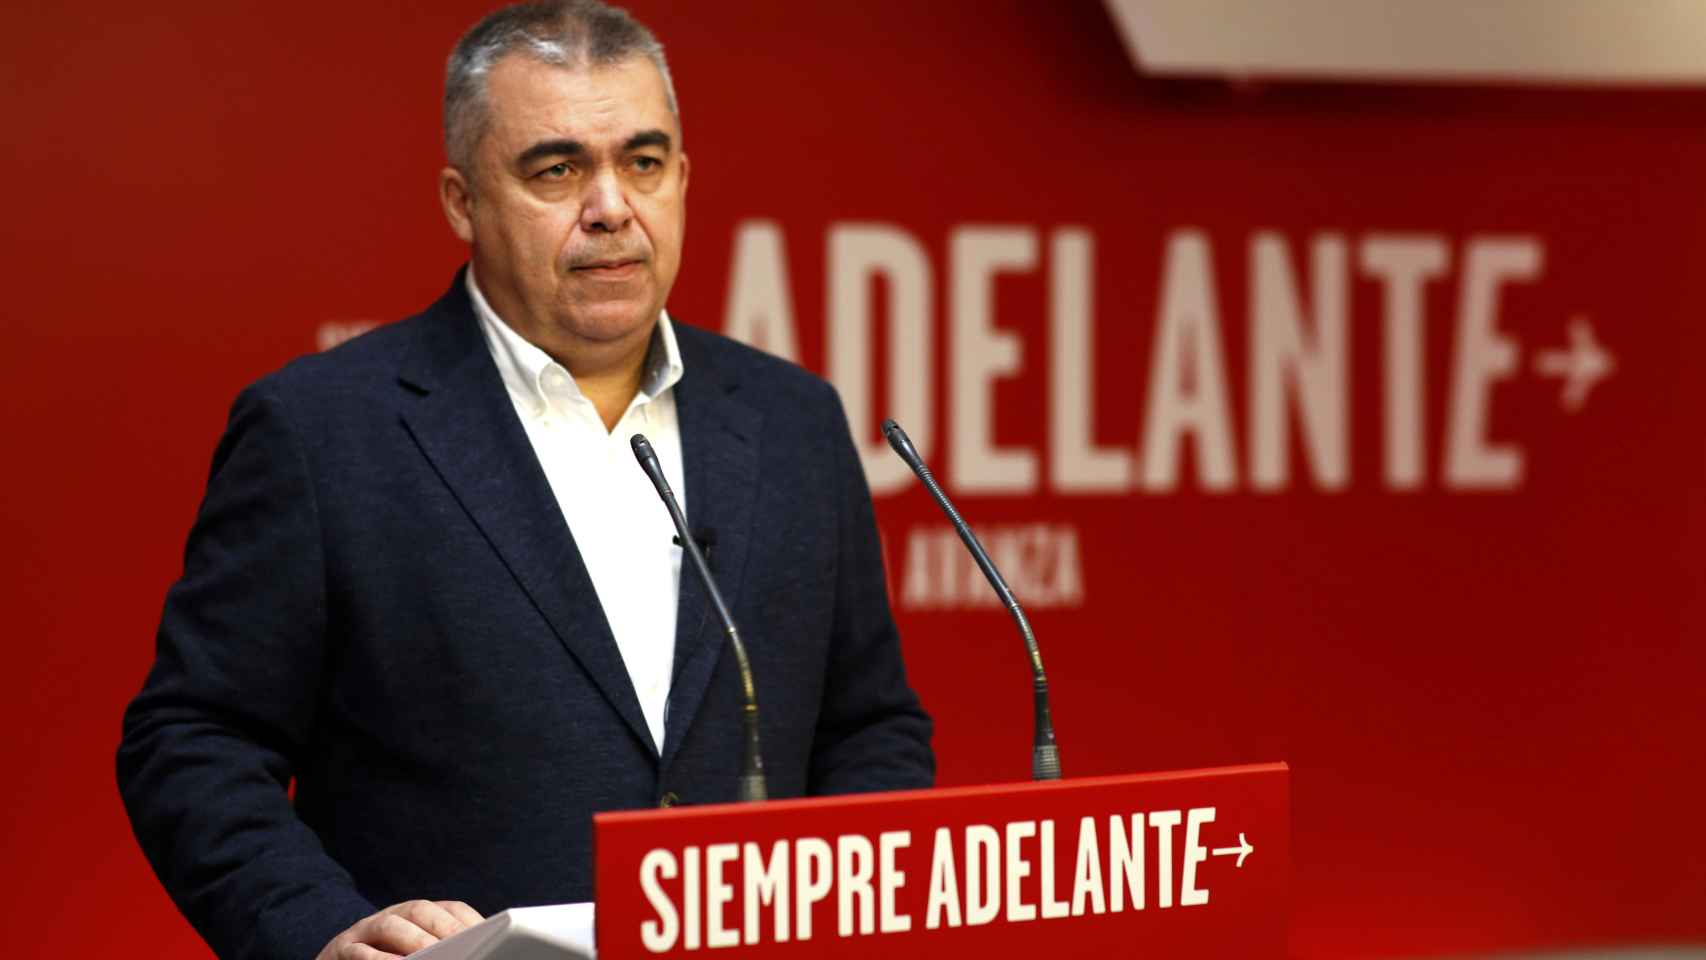 El secretario de Organización del PSOE, Santos Cerdán, anunciando el resultado de la consulta a la militancia socialista.